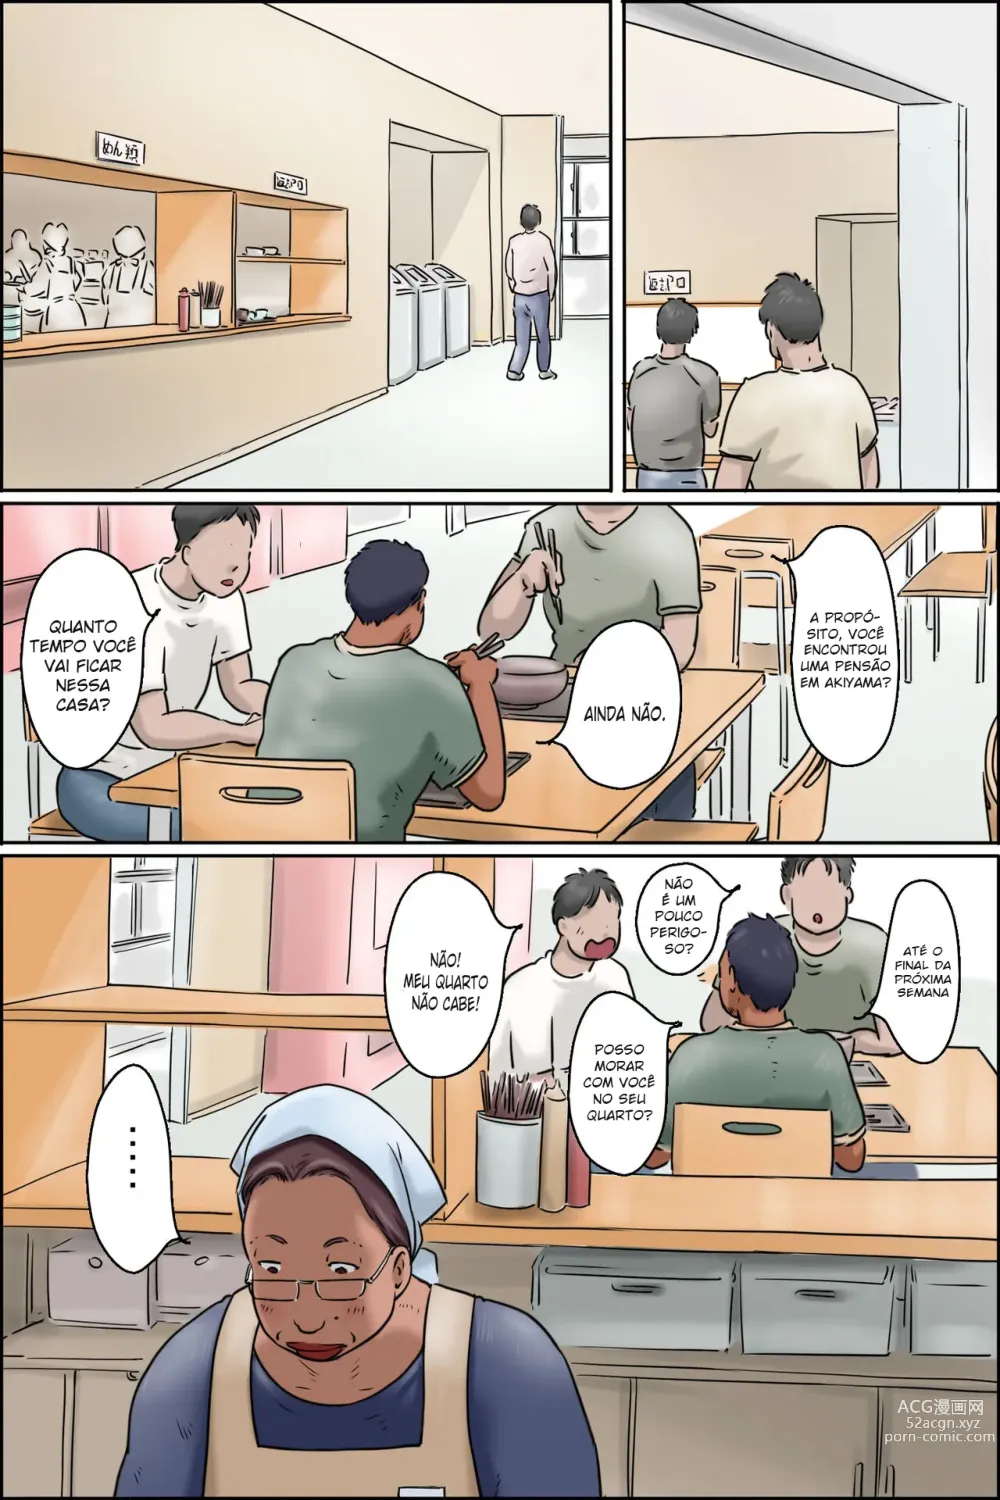 Page 2 of doujinshi Tia do refeitório da escola